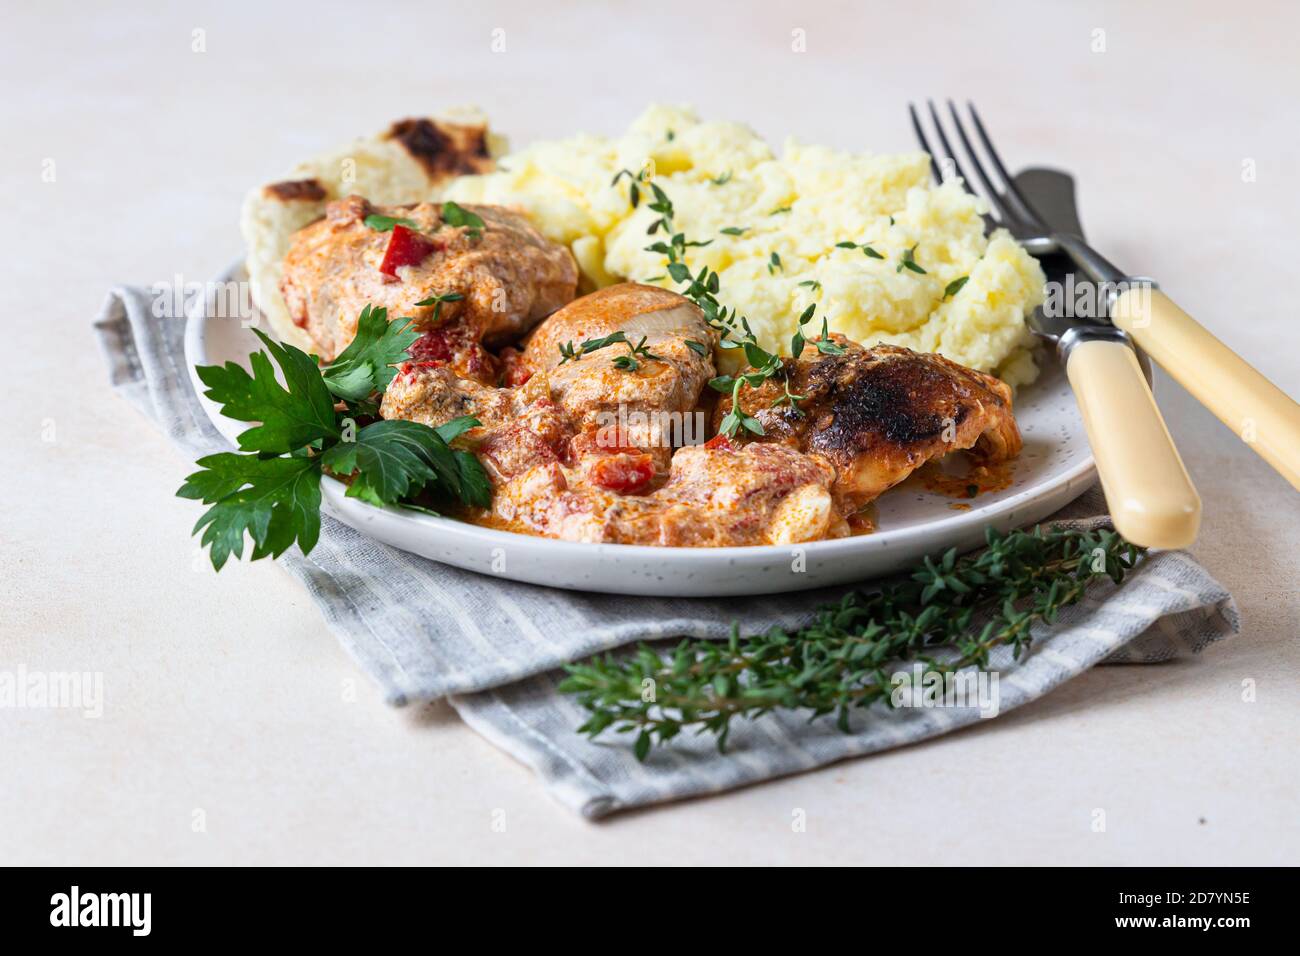 Ragoût de poulet à la paprika douce et à la crème aigre. Paprikash, plat traditionnel hongrois. Cuisine balkanienne. Nourriture de confort d'automne ou d'hiver. Foc sélectif Banque D'Images